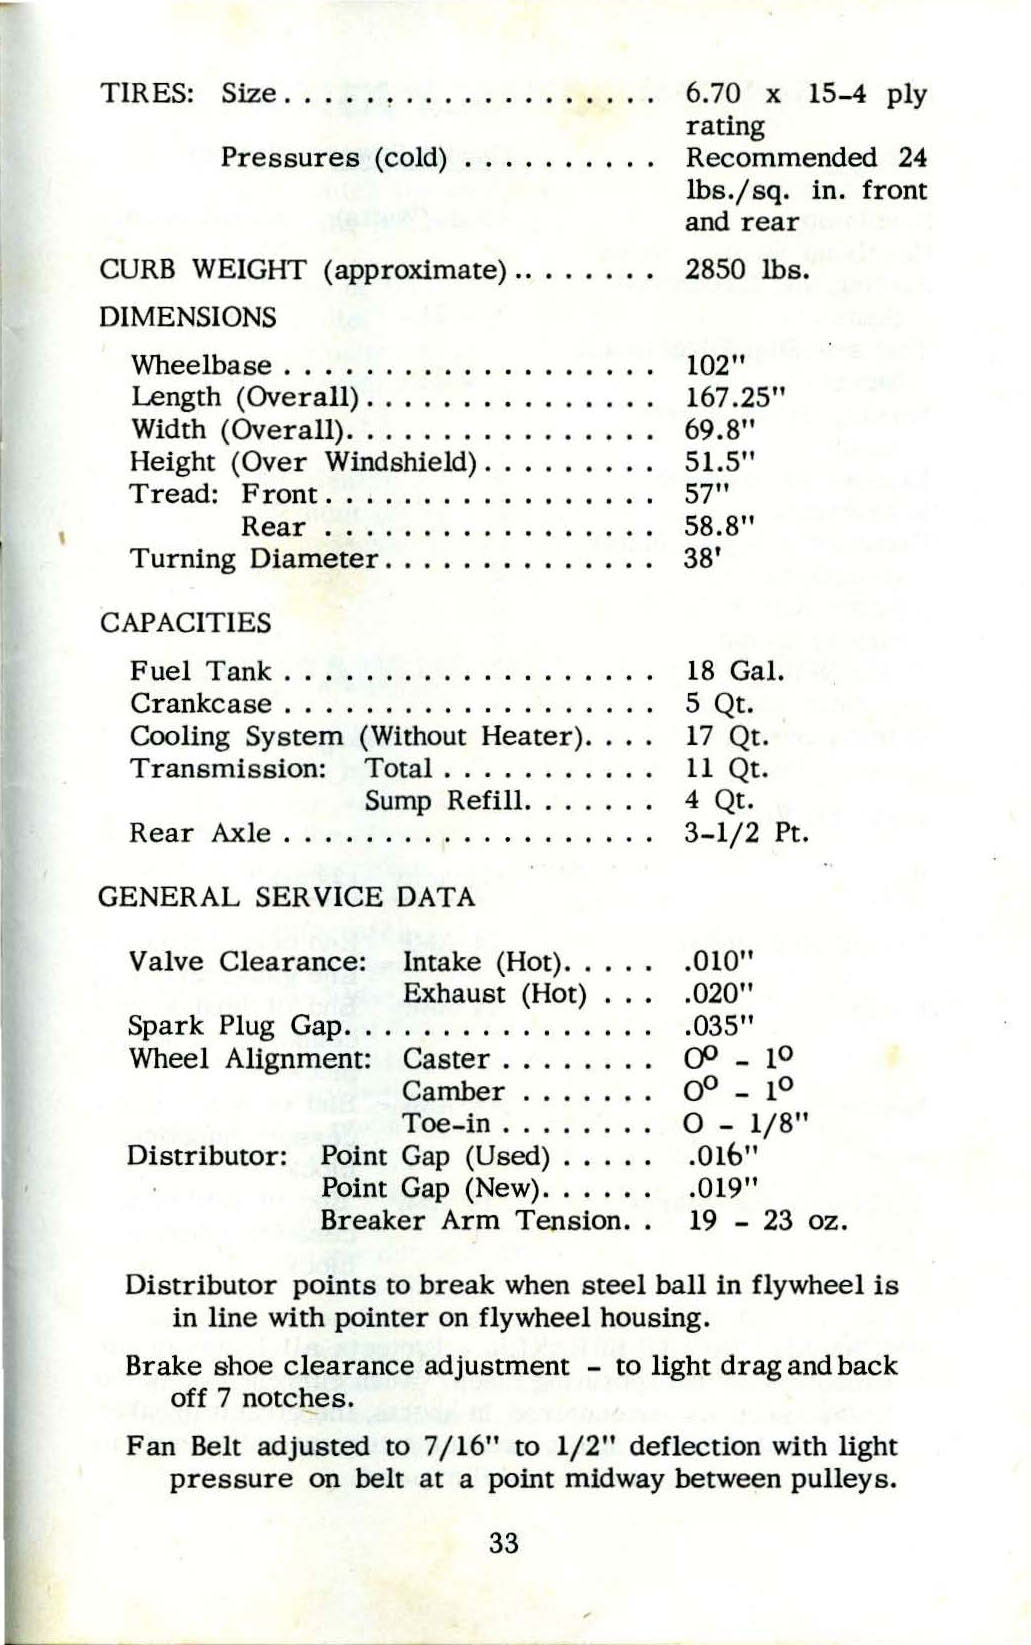 1953_Corvette_Owners_Manual-33